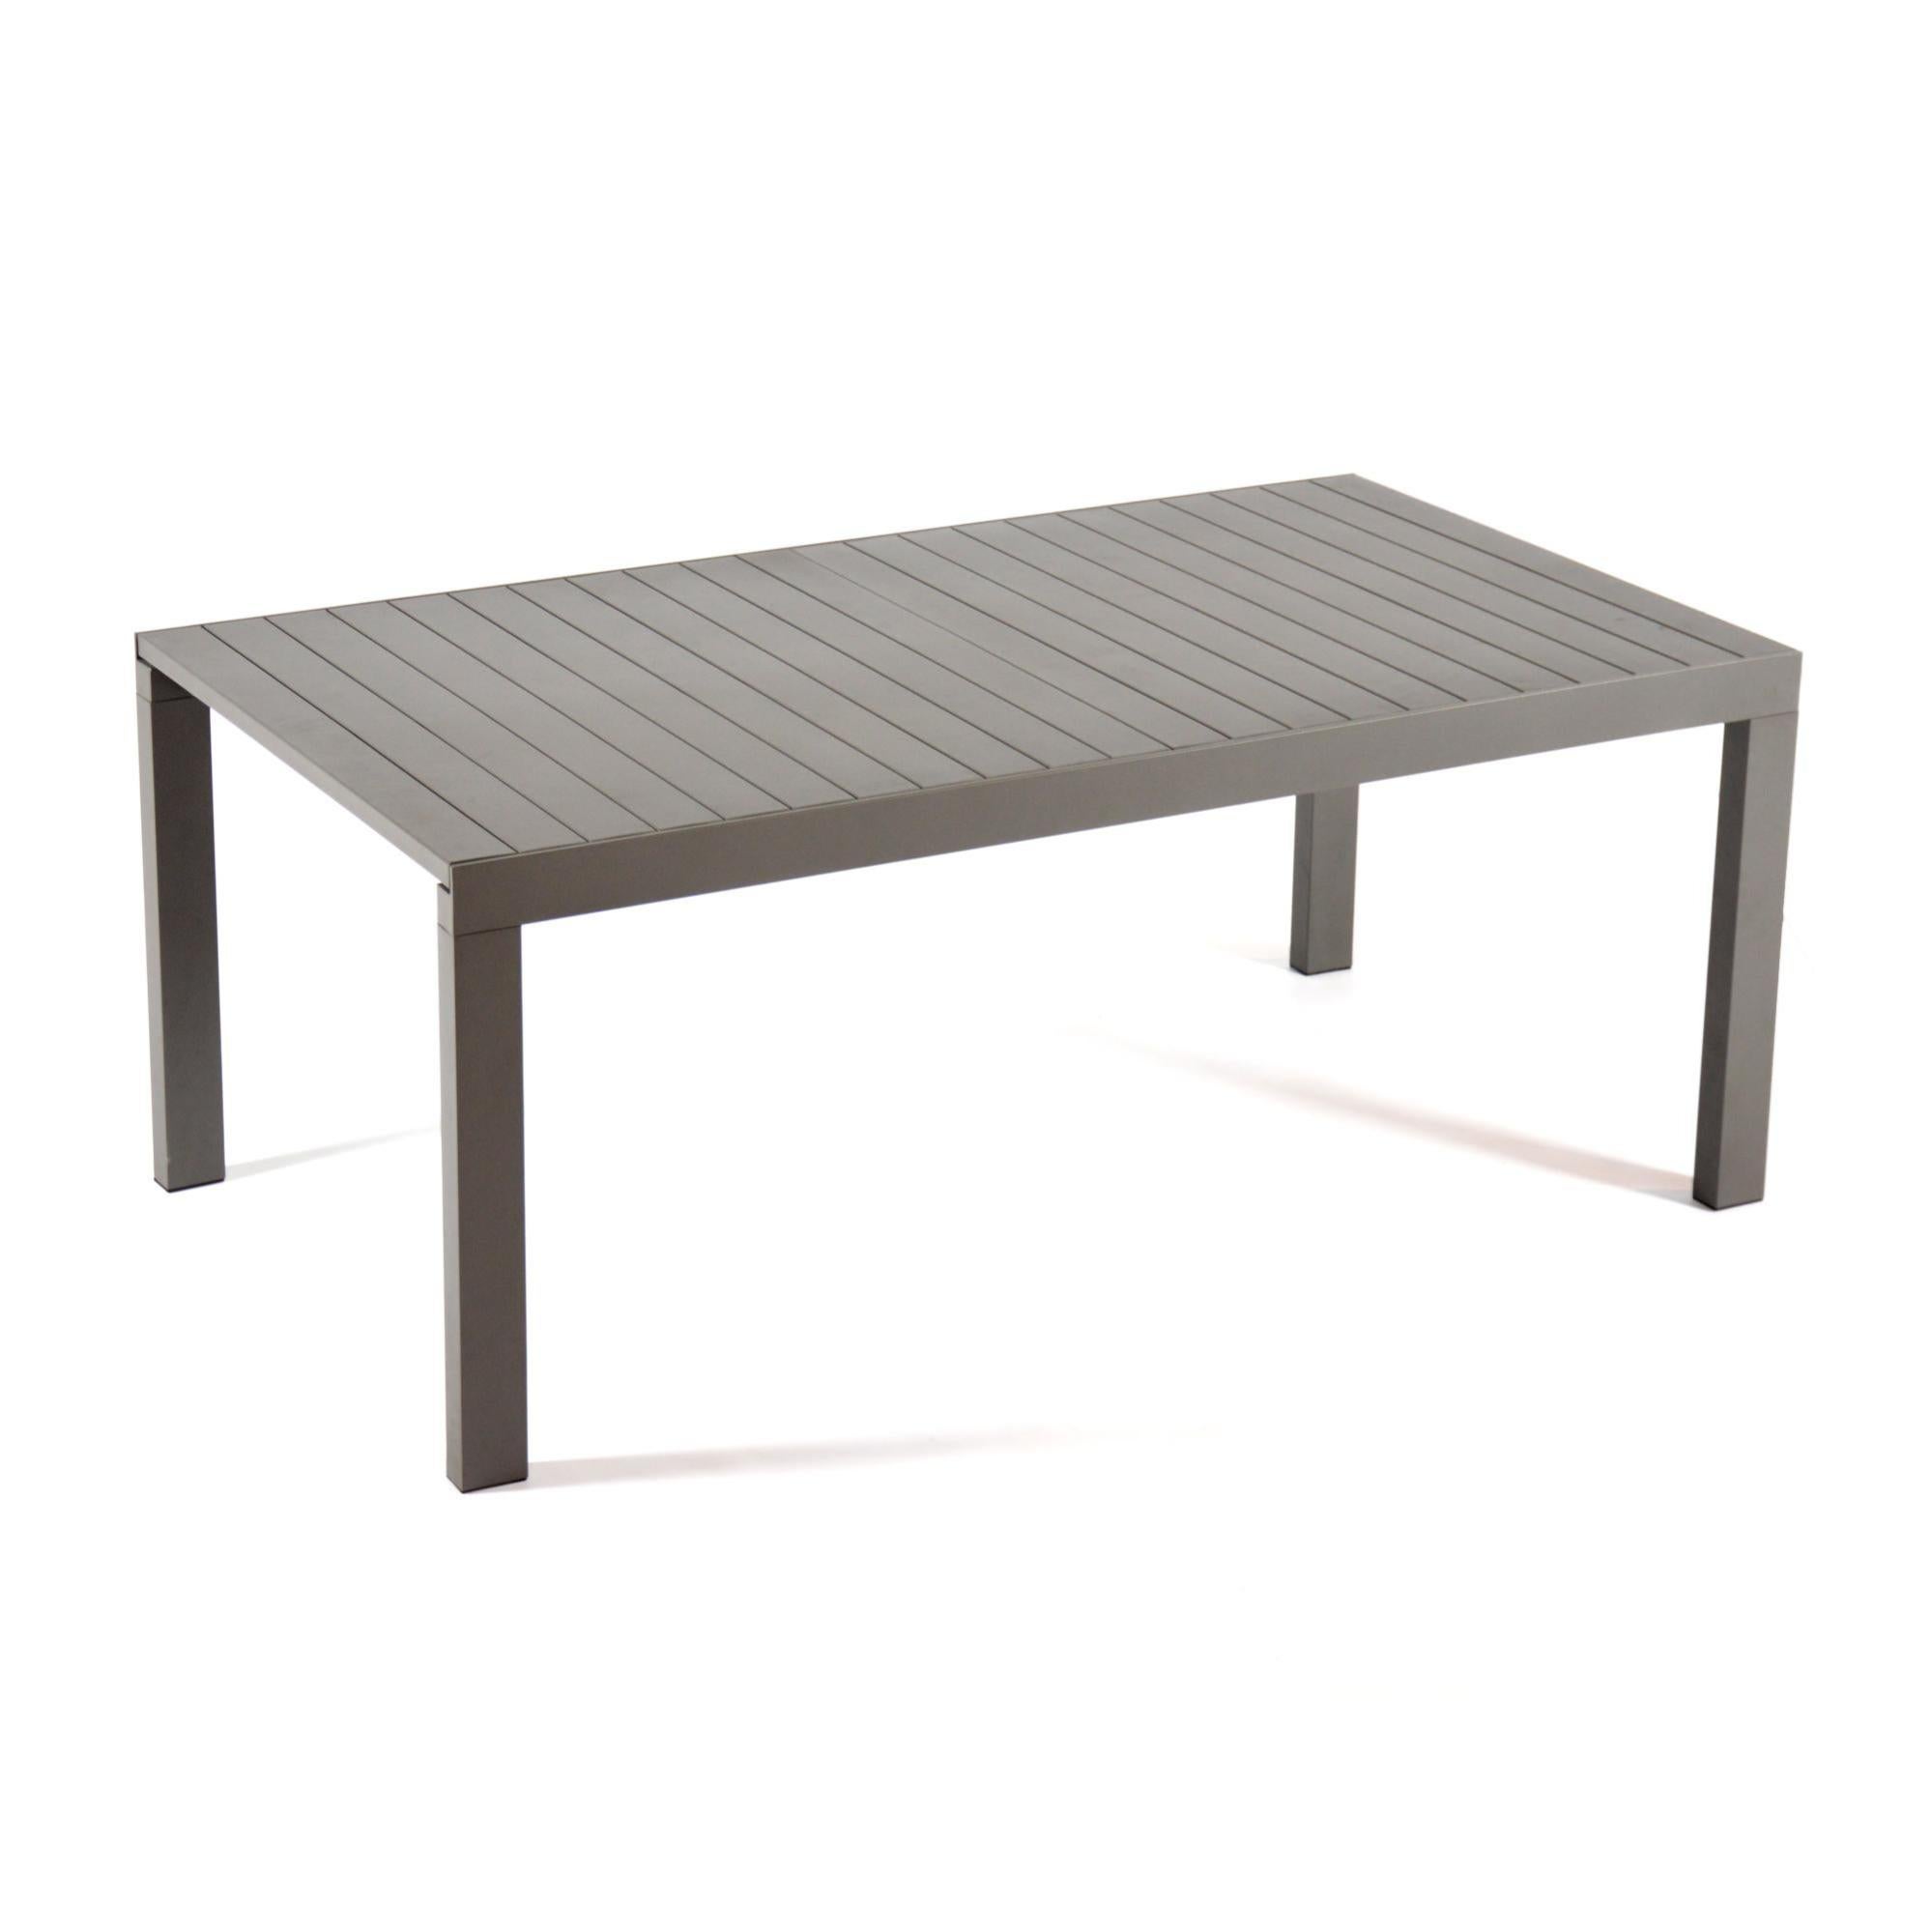 Table de jardin ARCANE Panama rectangulaire gris / argent 6 personnes